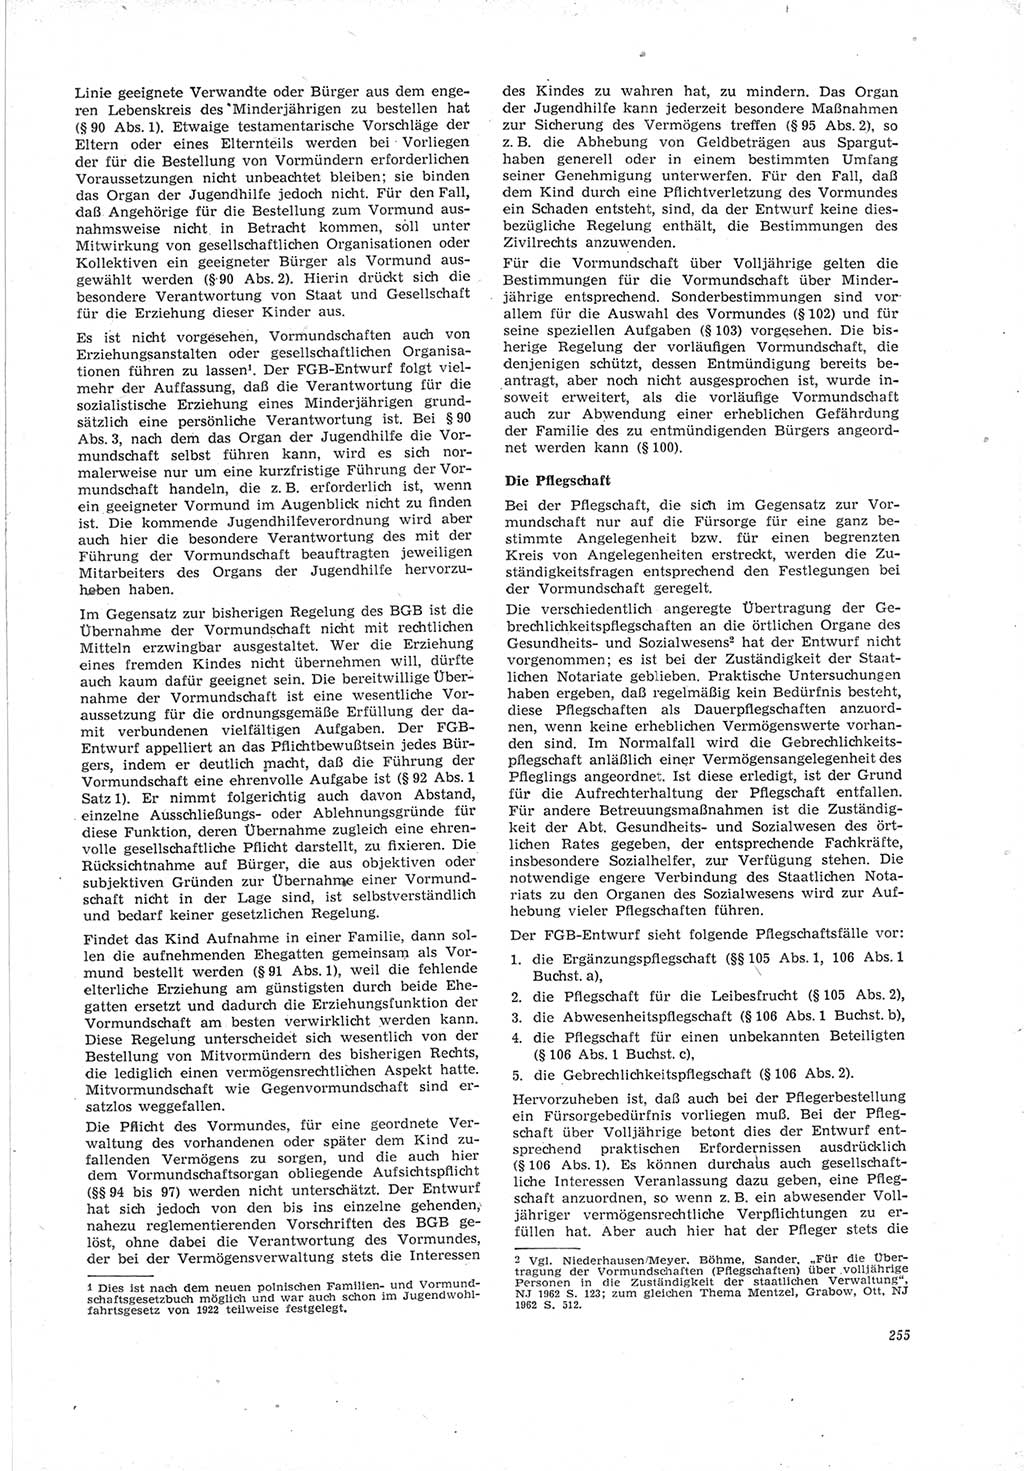 Neue Justiz (NJ), Zeitschrift für Recht und Rechtswissenschaft [Deutsche Demokratische Republik (DDR)], 19. Jahrgang 1965, Seite 255 (NJ DDR 1965, S. 255)